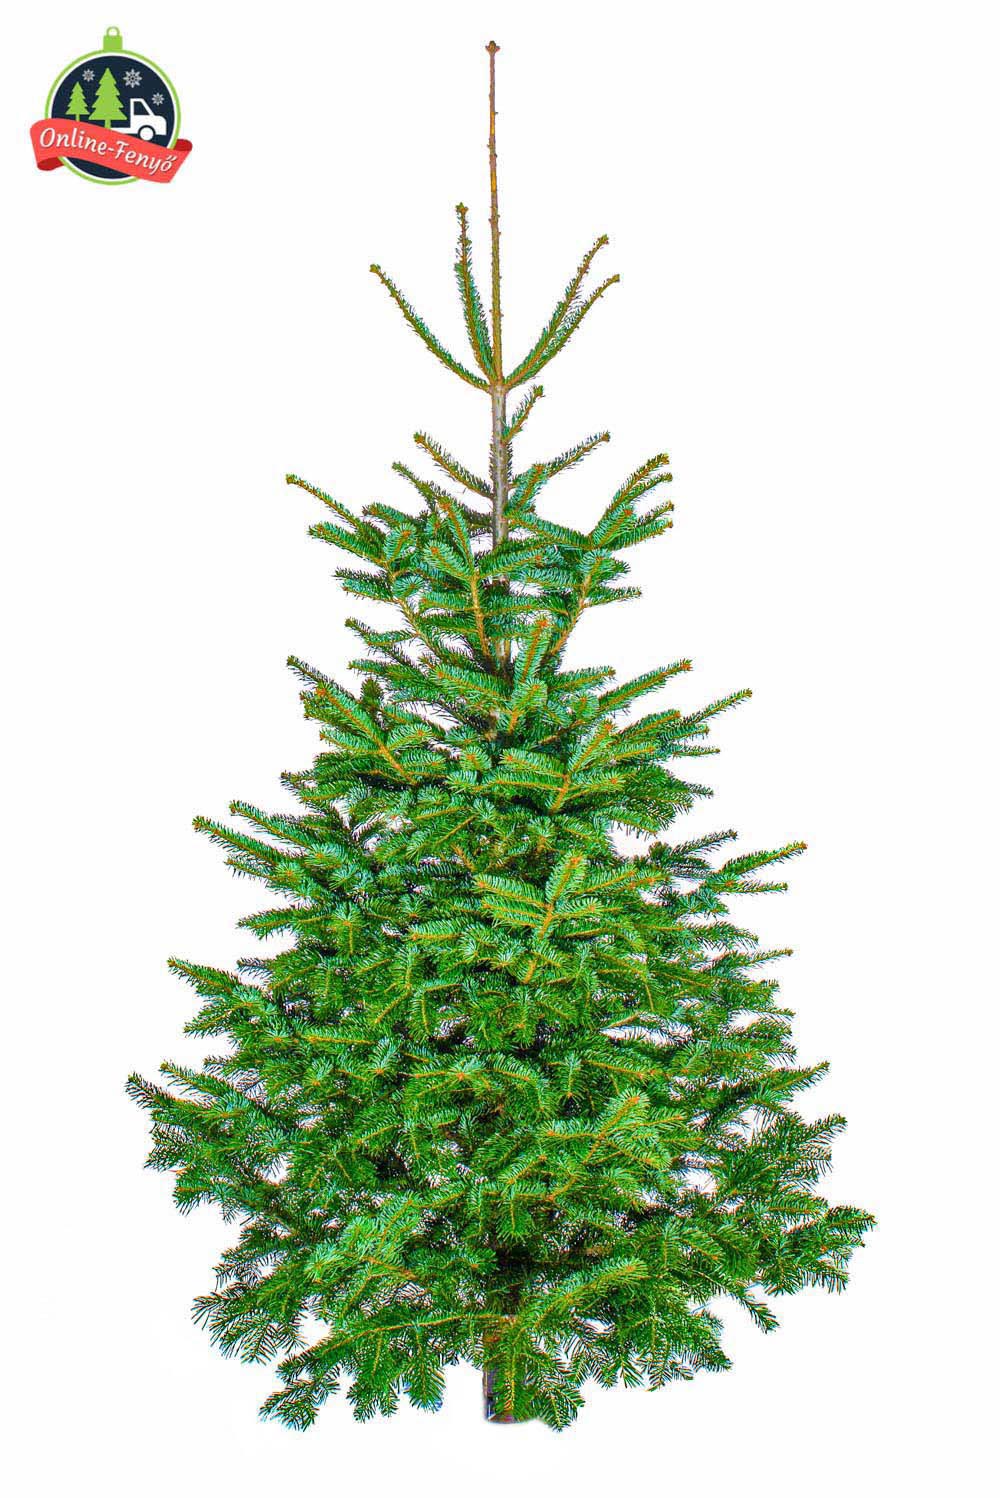 Cégek, üzletek számára 3, 4 méteres nordmann karácsonyfa